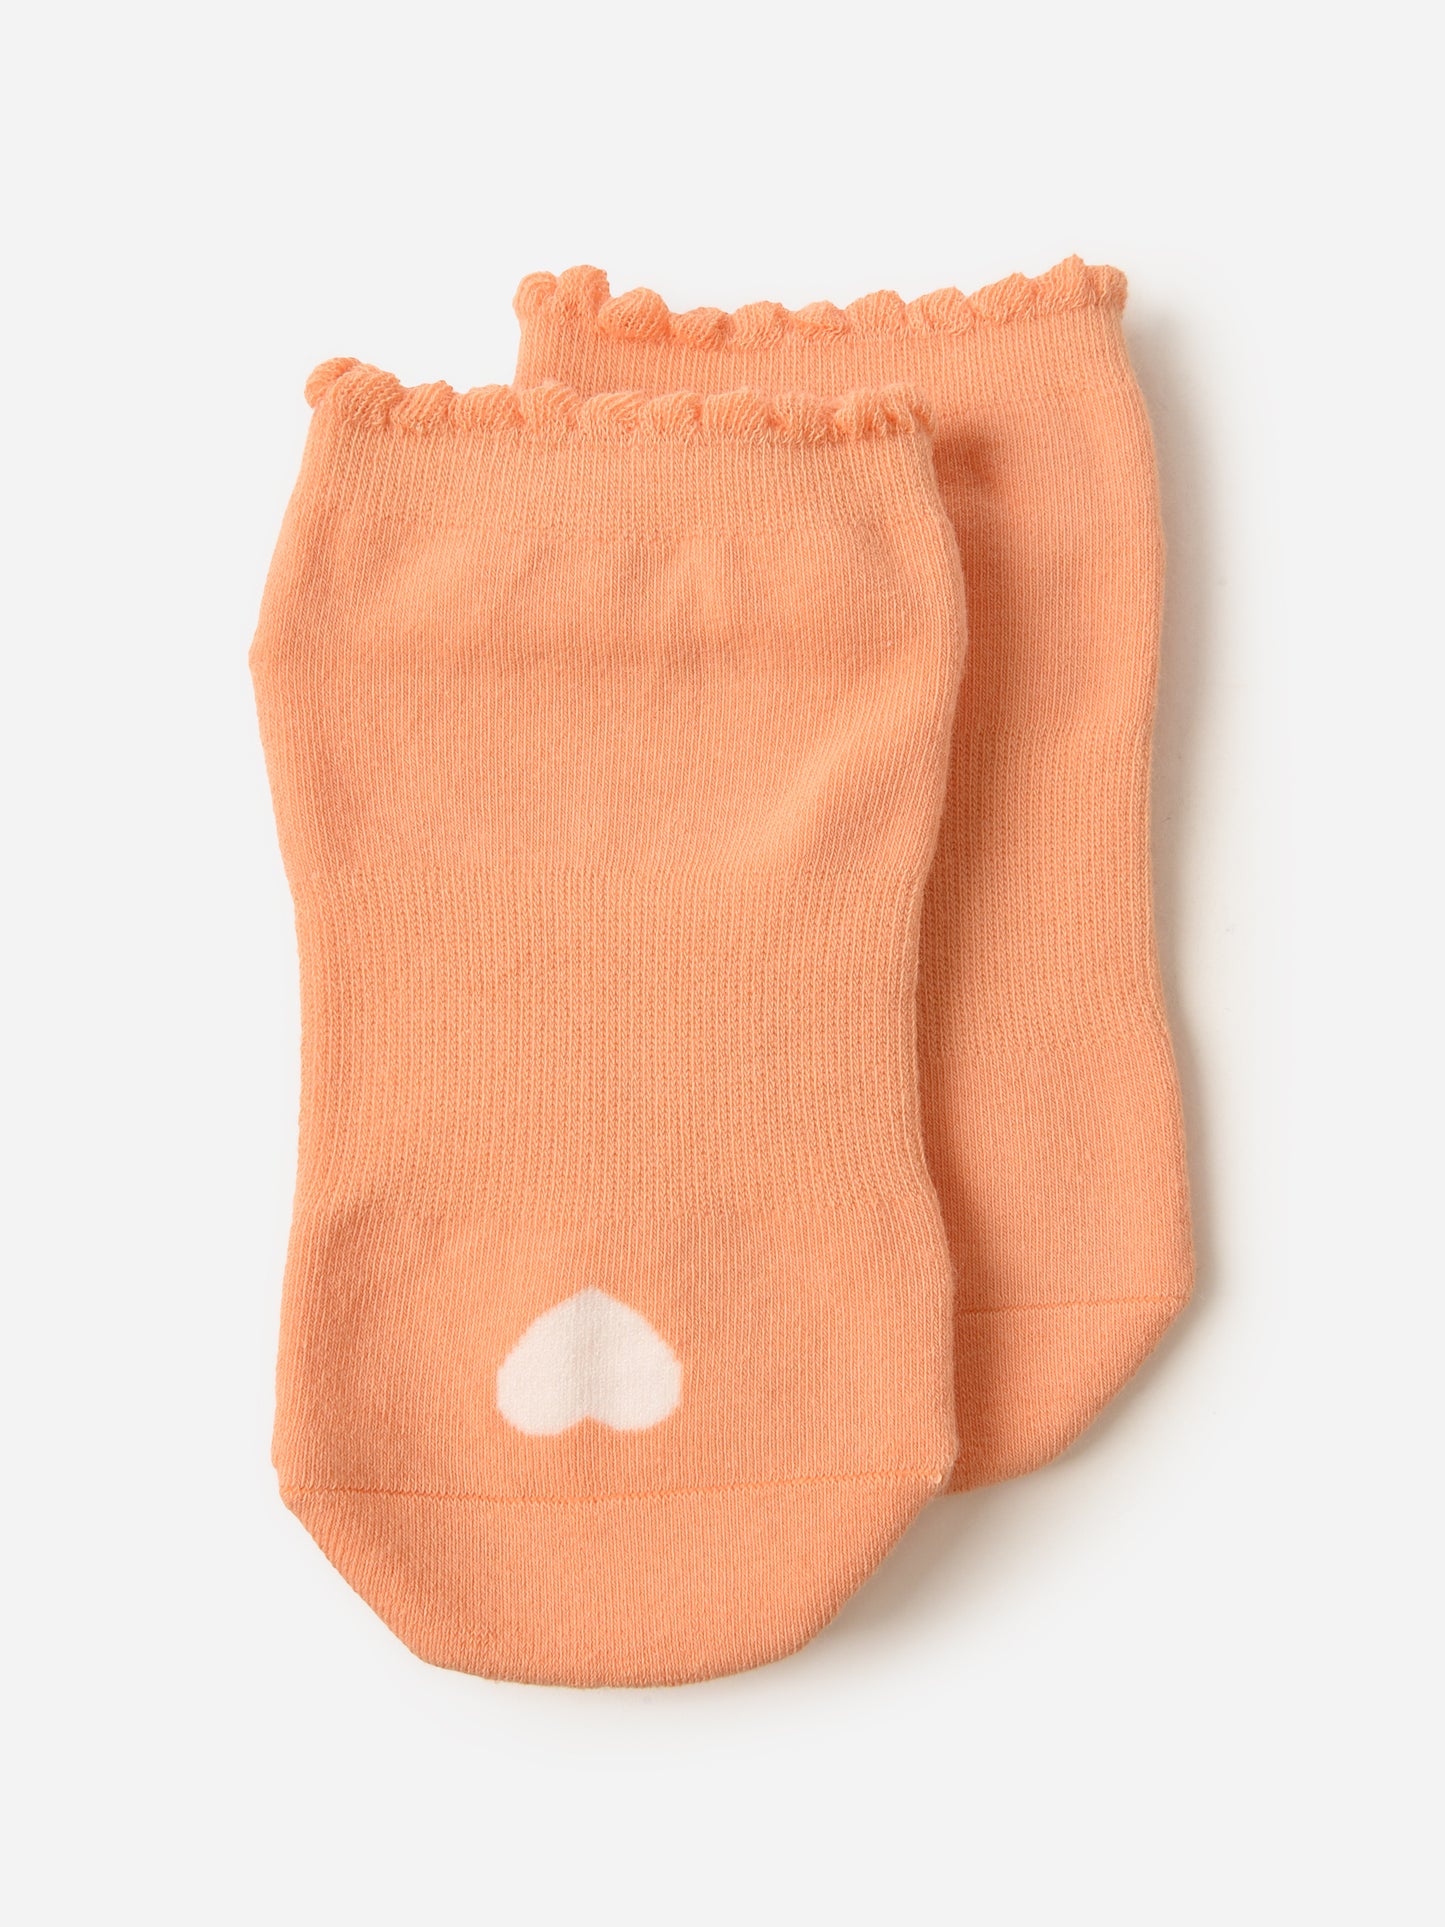 Pointe Studio Women's The Love Full Foot Grip Socks